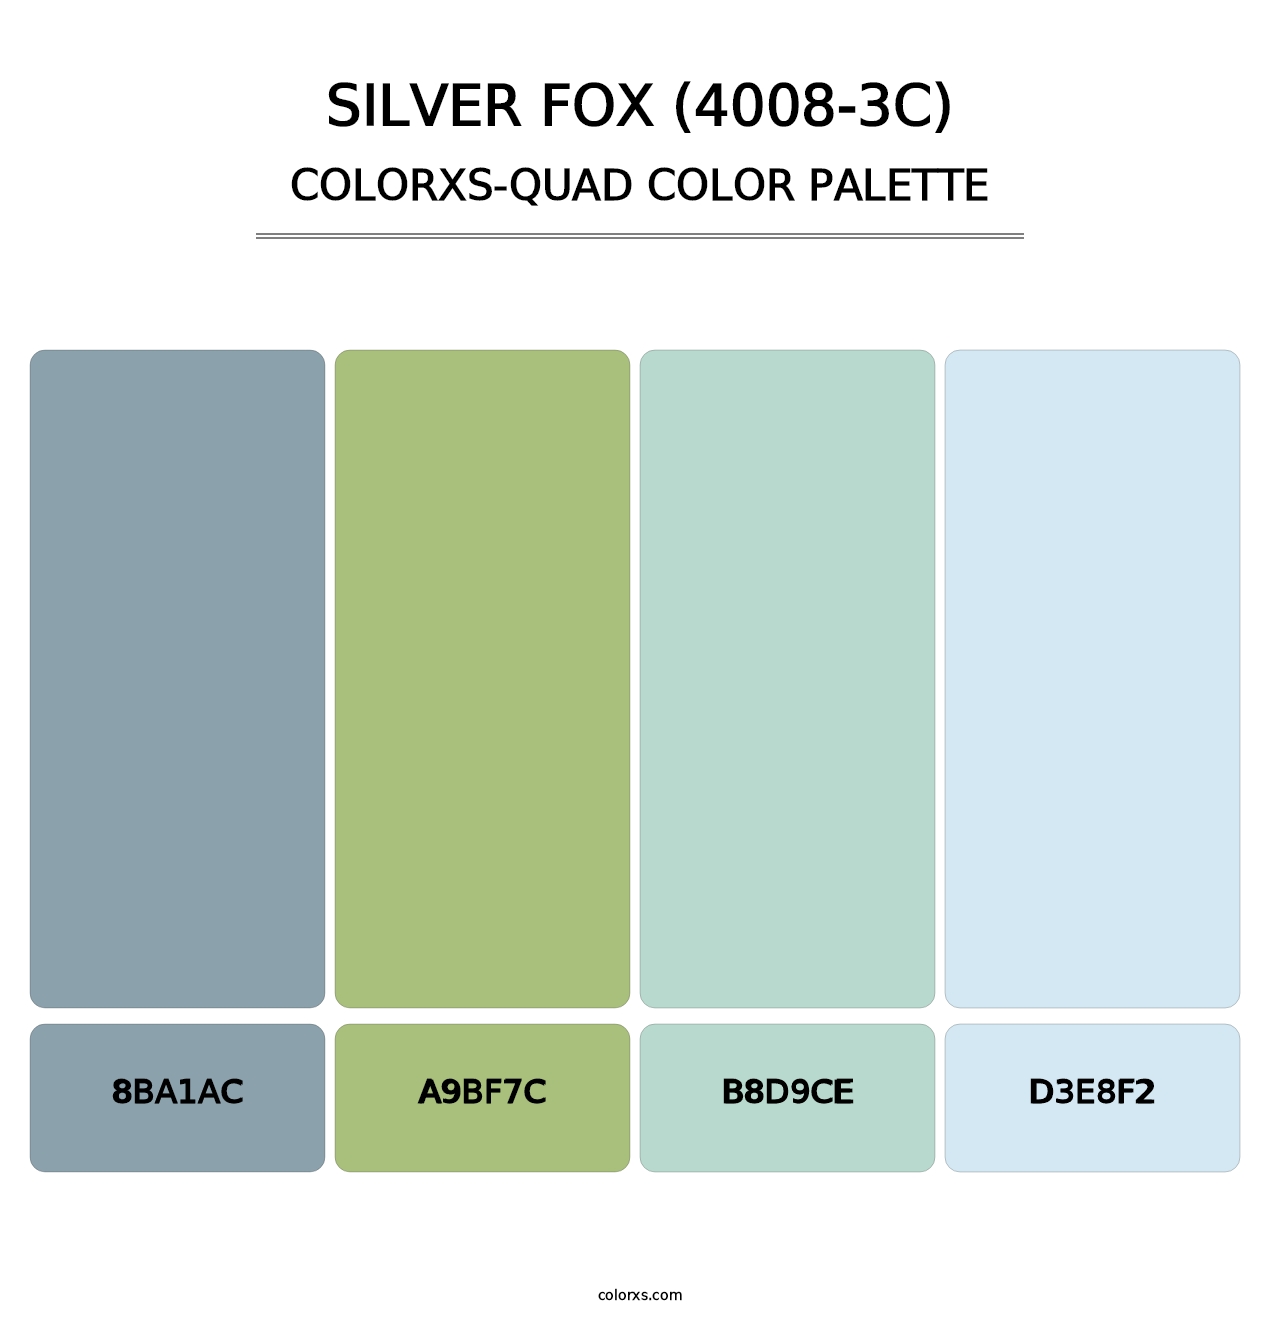 Silver Fox (4008-3C) - Colorxs Quad Palette